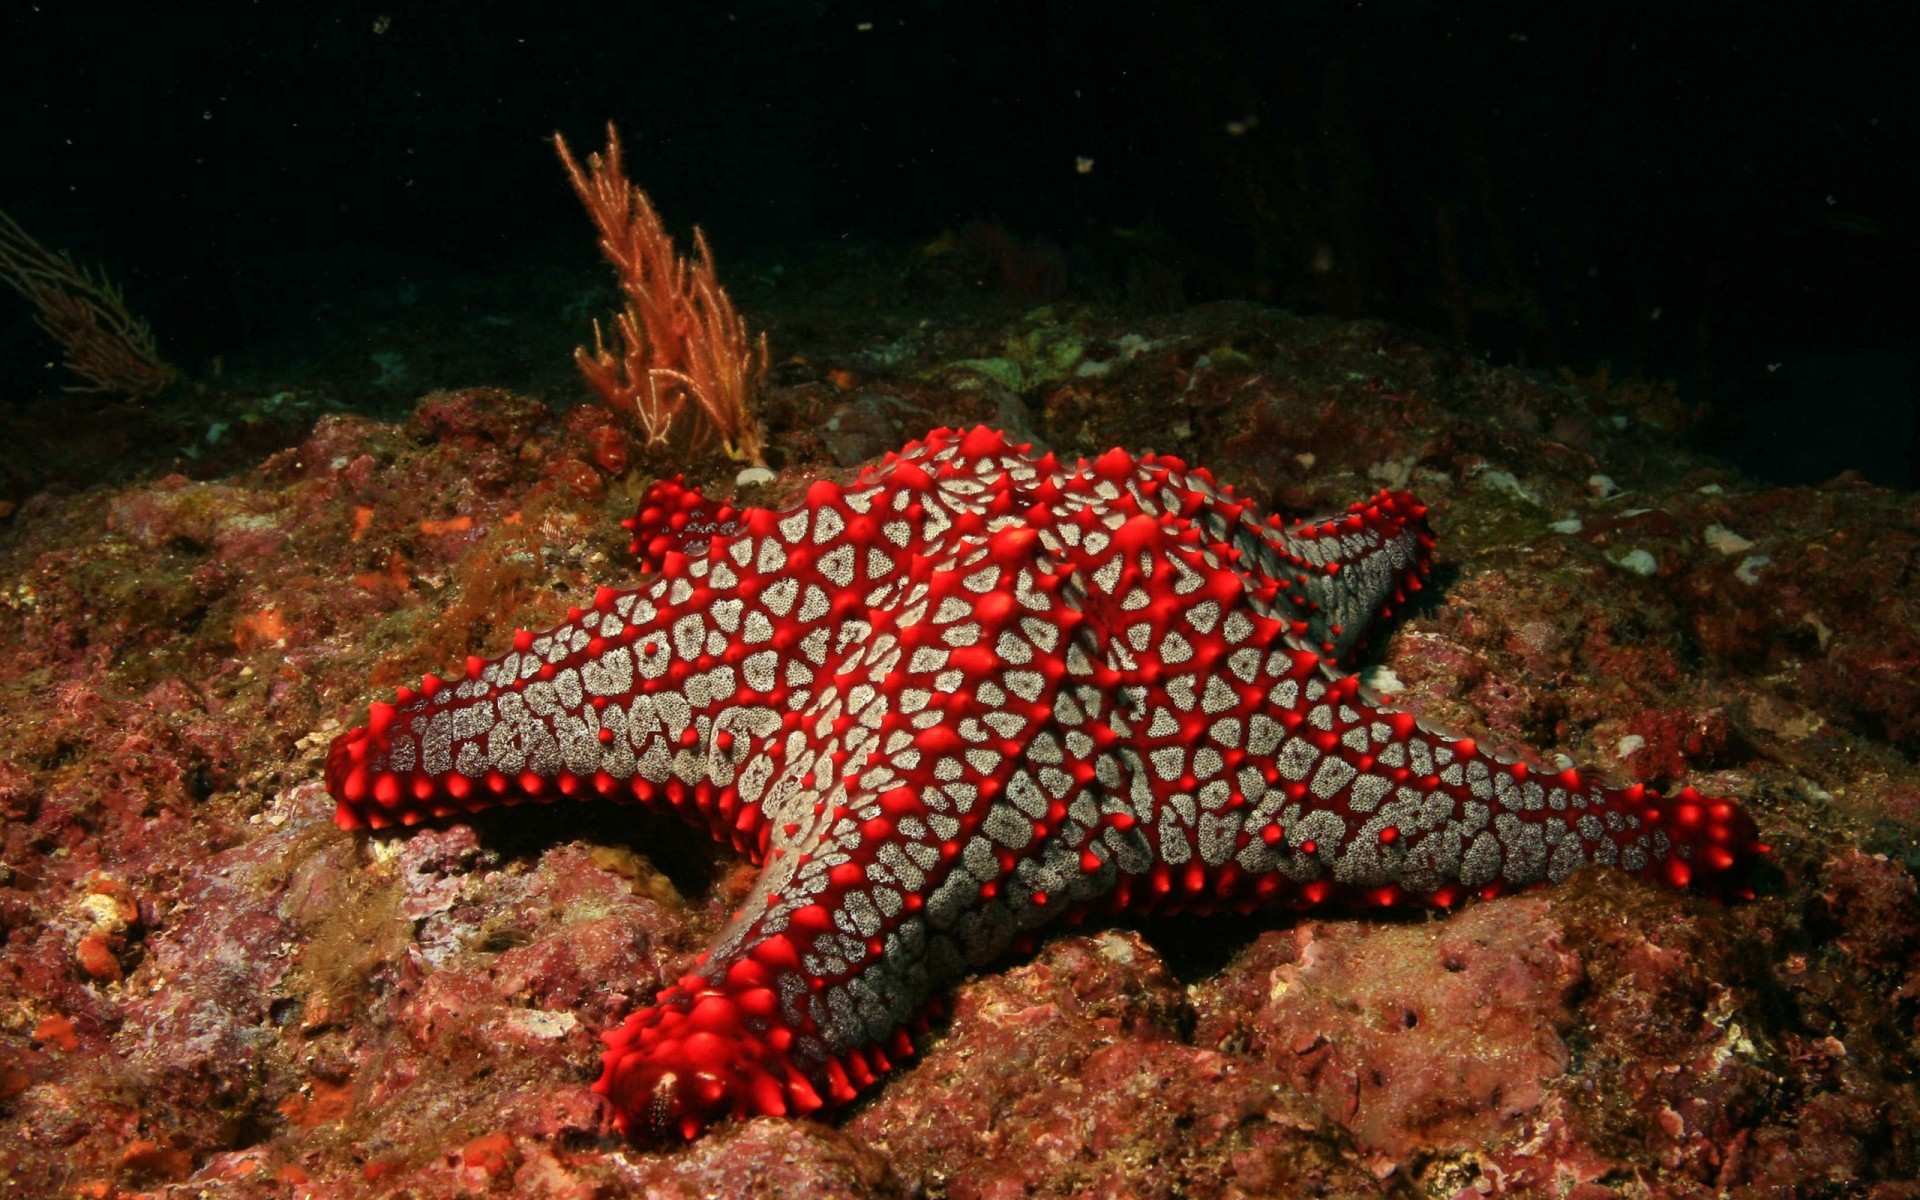 animals underwater invertebrate fish echinoderm coral reef ocean starfish wildlife submarine sea diving water shellfish biology marine environment tropical